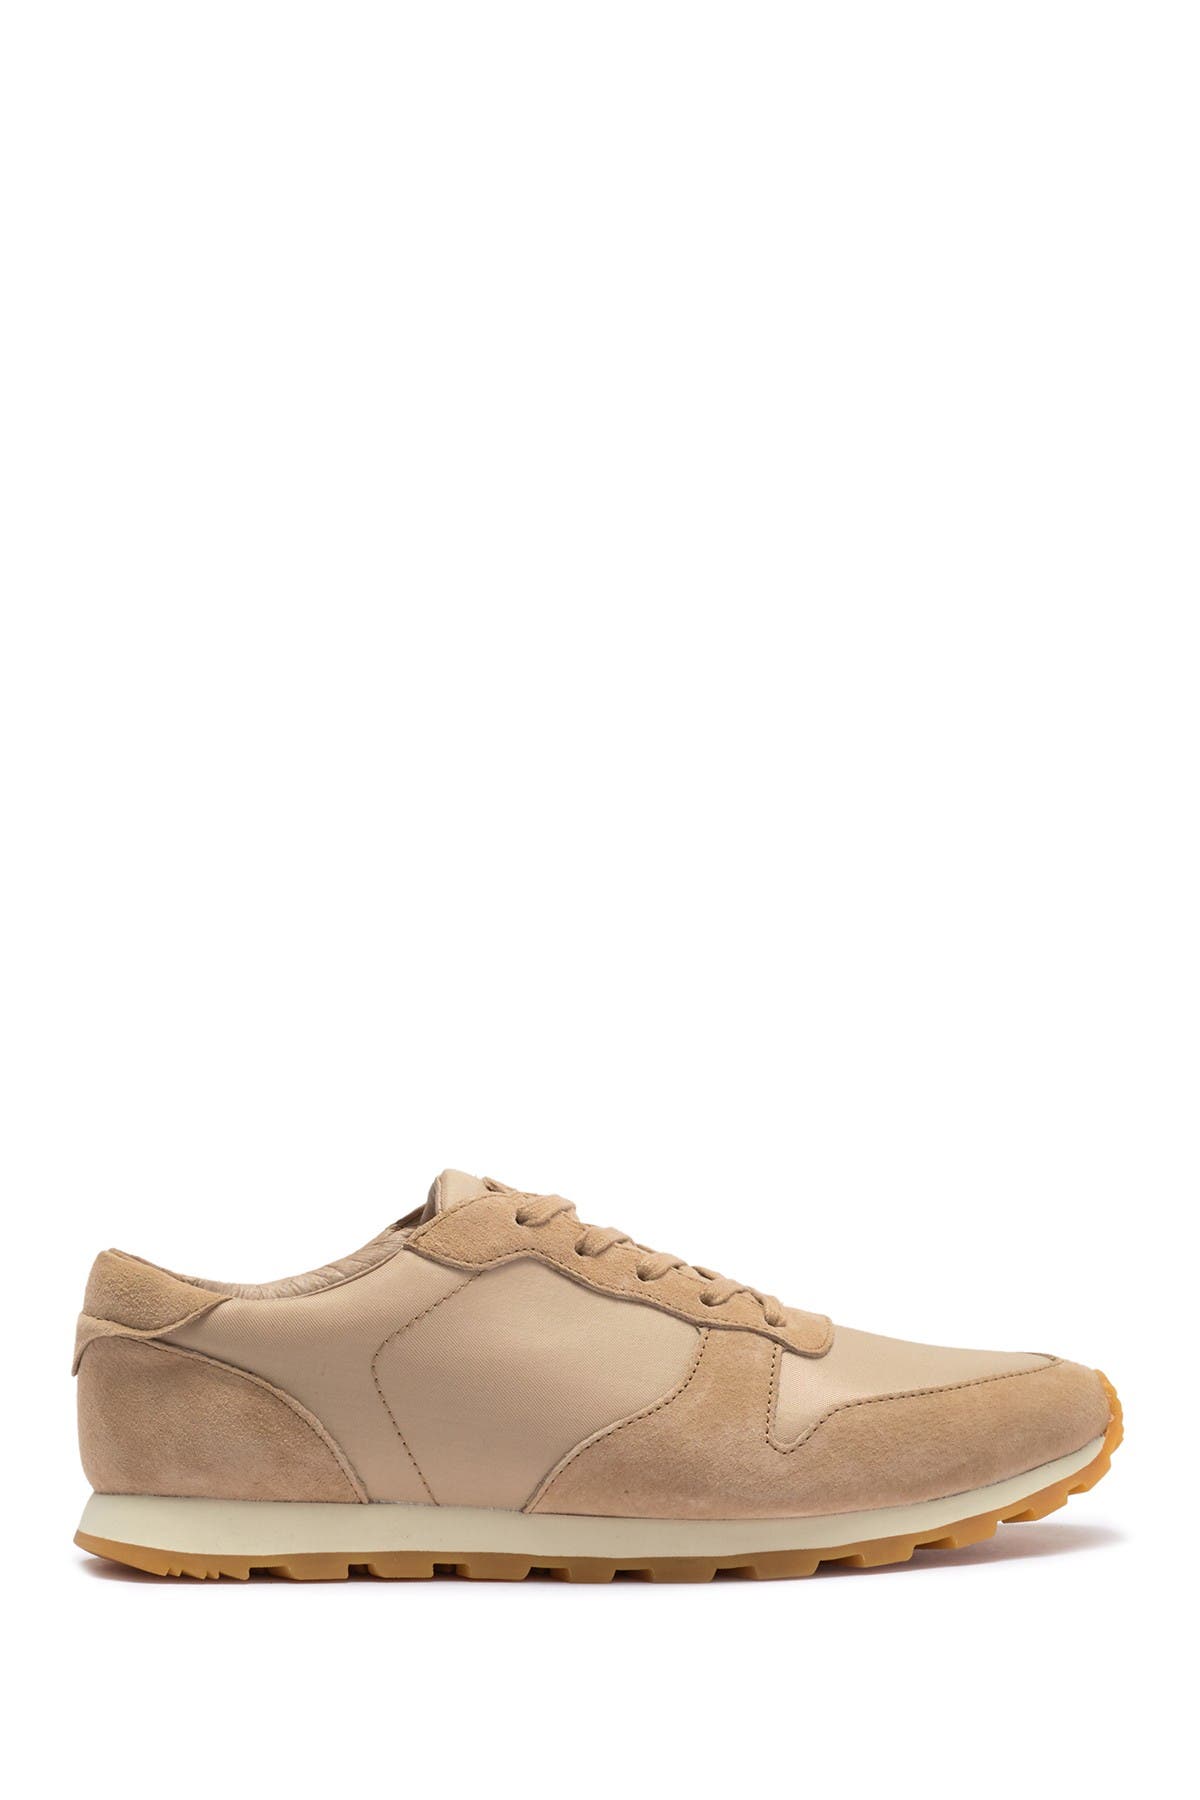 Clae | Hayward Leather \u0026 Suede Sneaker 